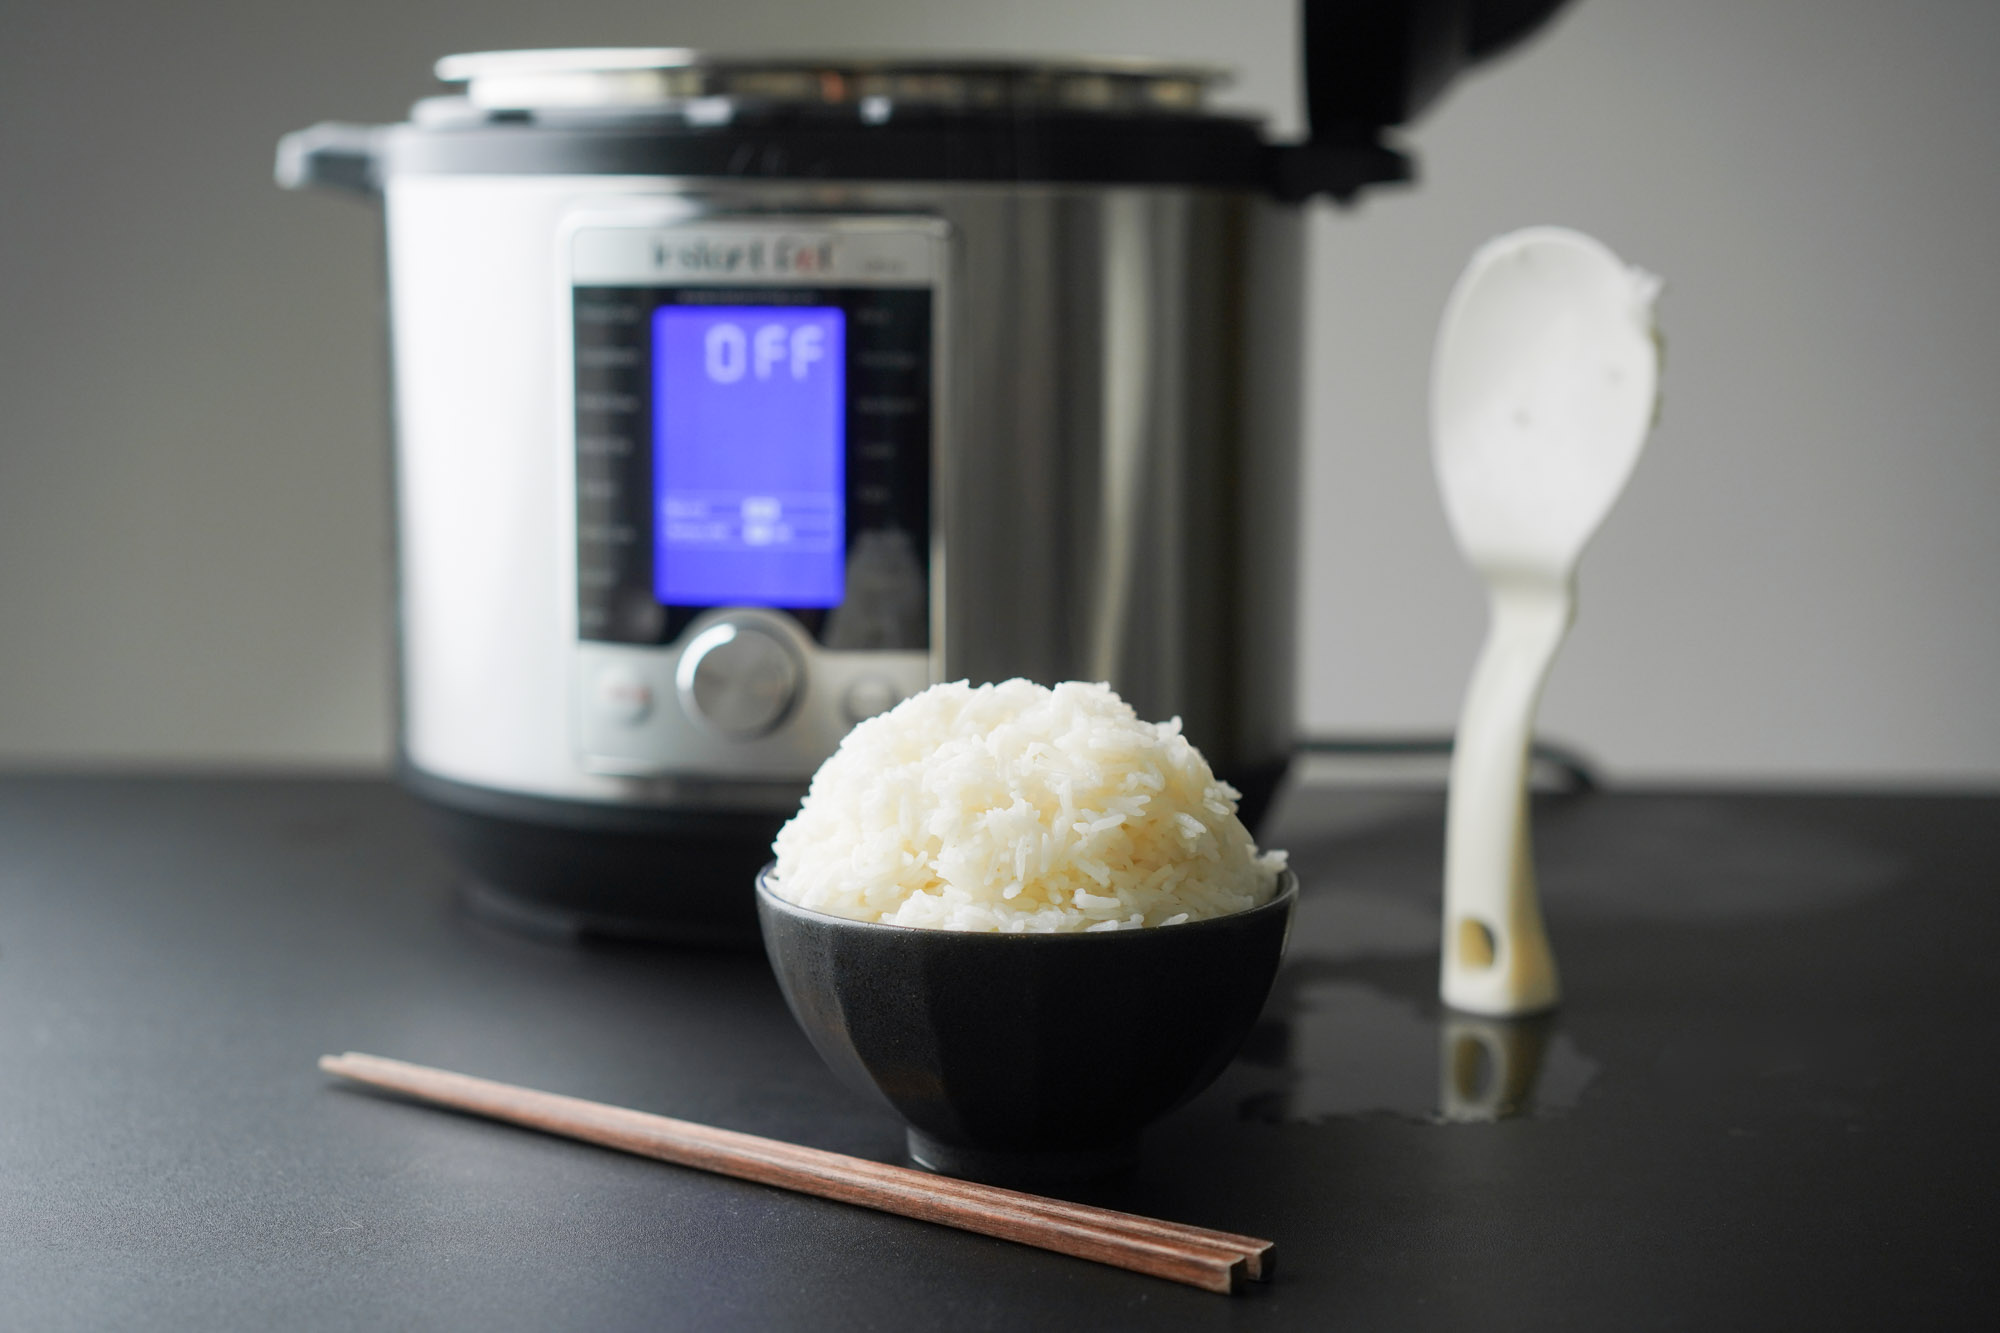 How to Cook Jasmine Rice Recipe